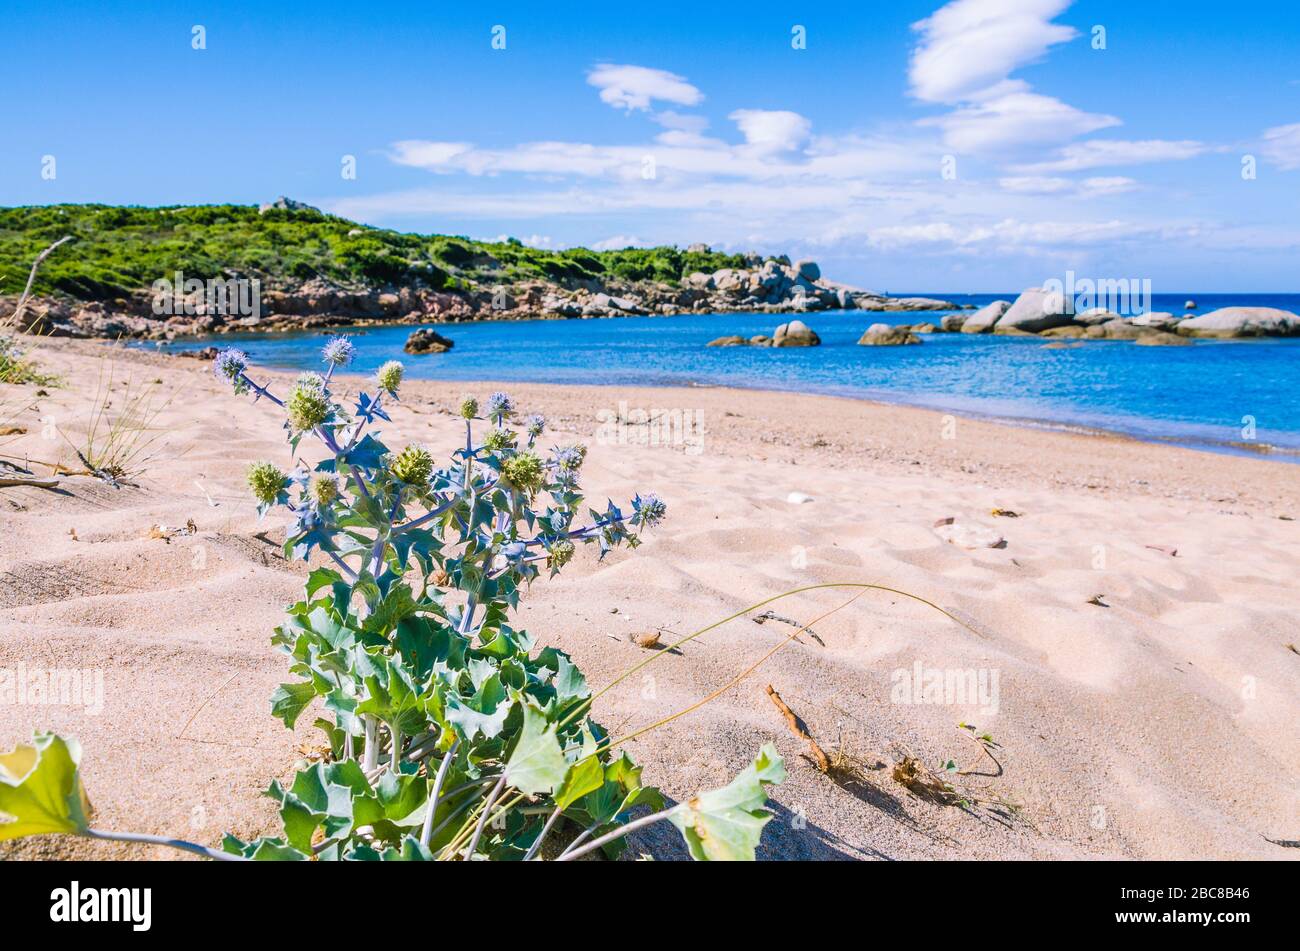 Plage vide avec de l'eau azure sur la magnifique île de Sardaigne, Italie. Banque D'Images